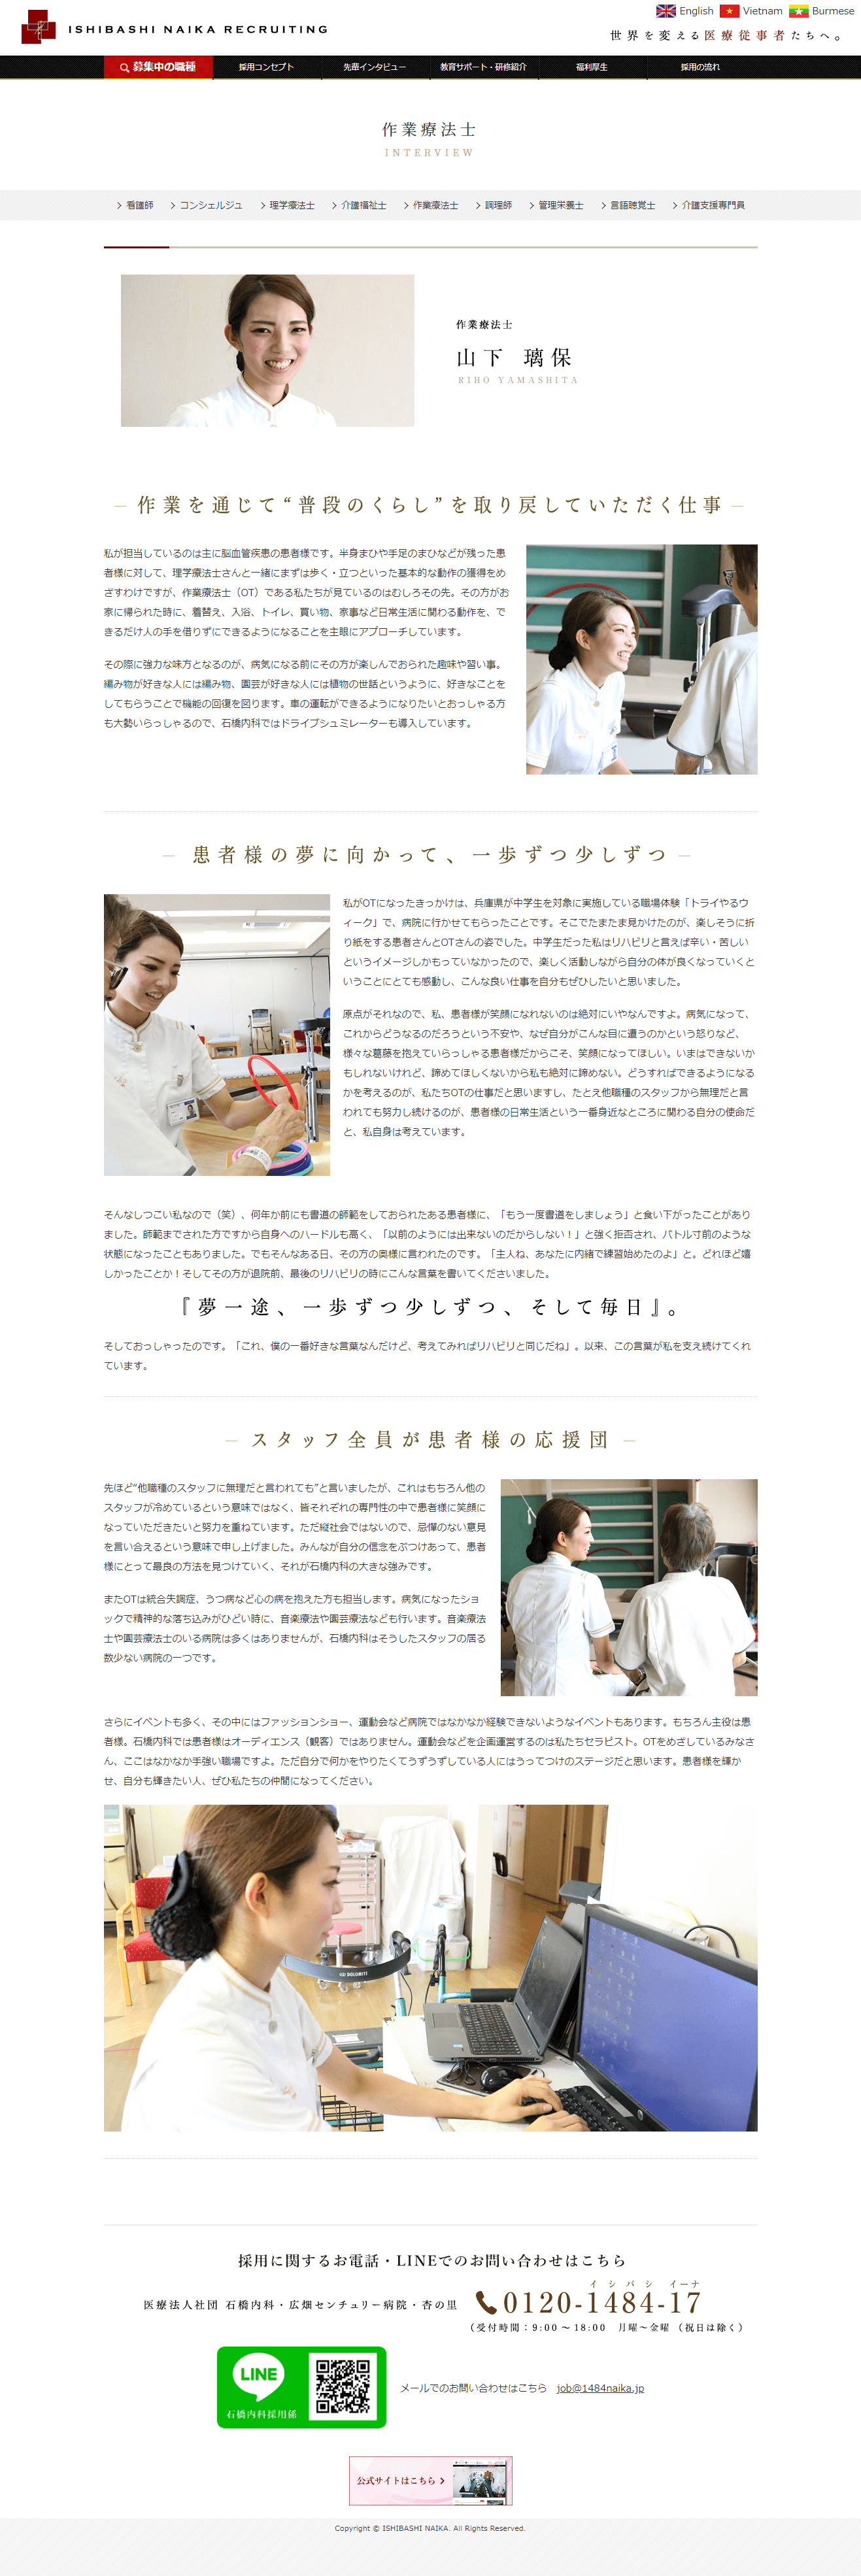 姫路市 石橋内科 採用専門サイト制作2